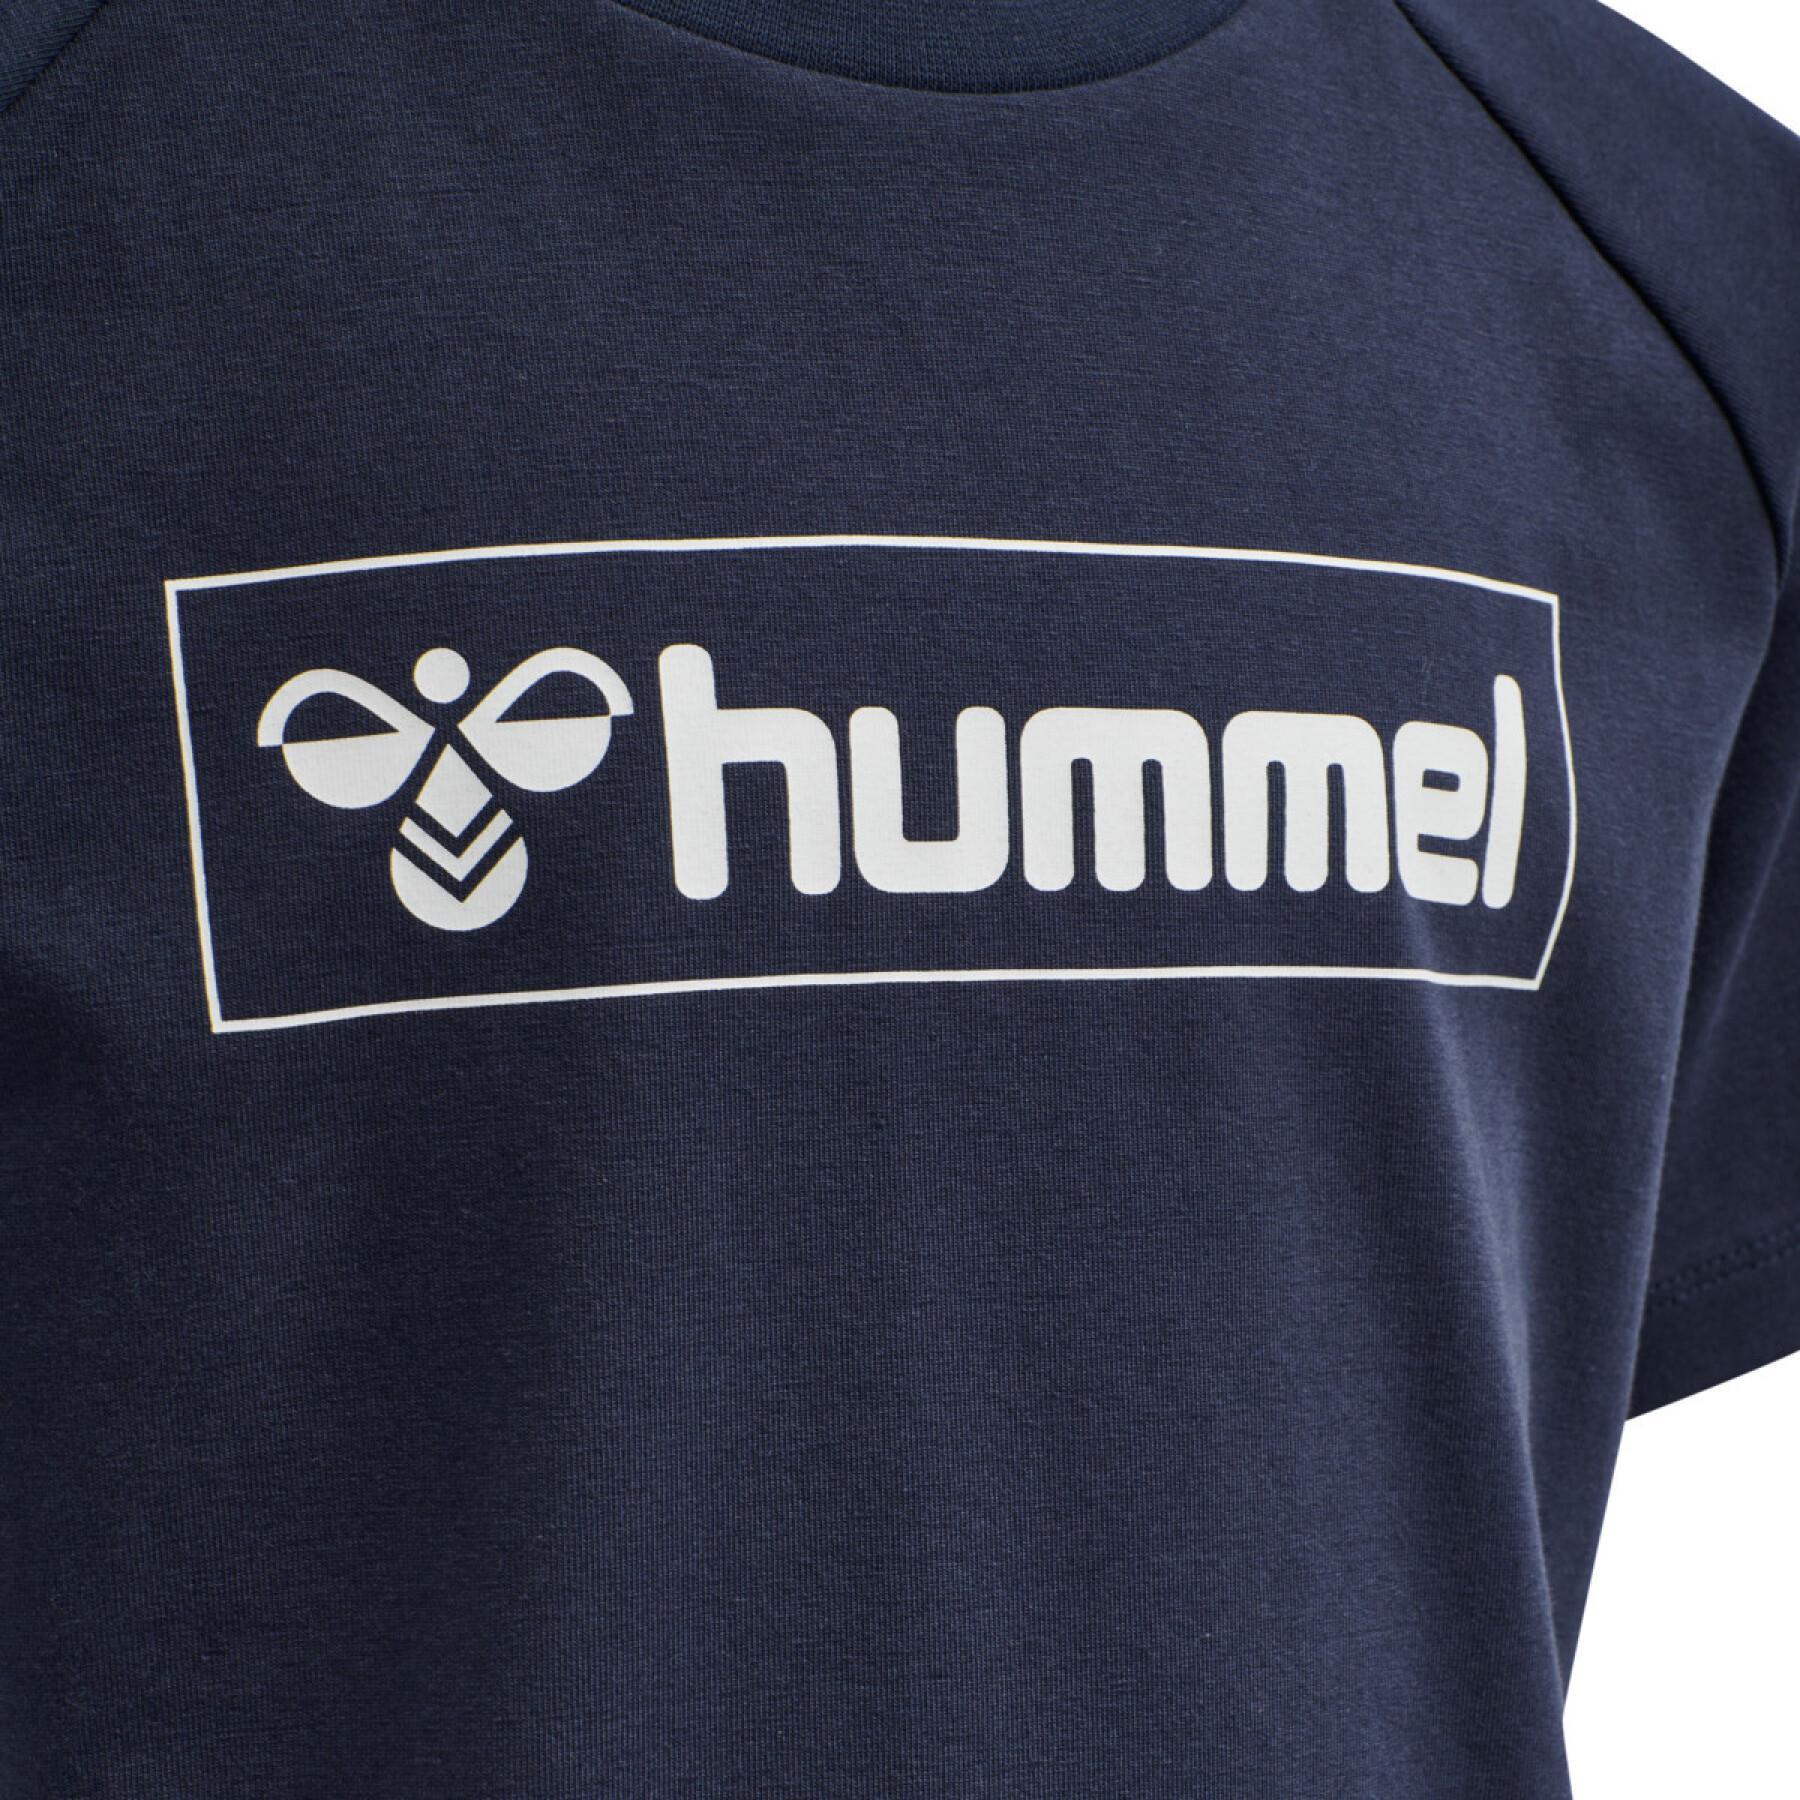 T-shirt enfant Hummel hmlBOX